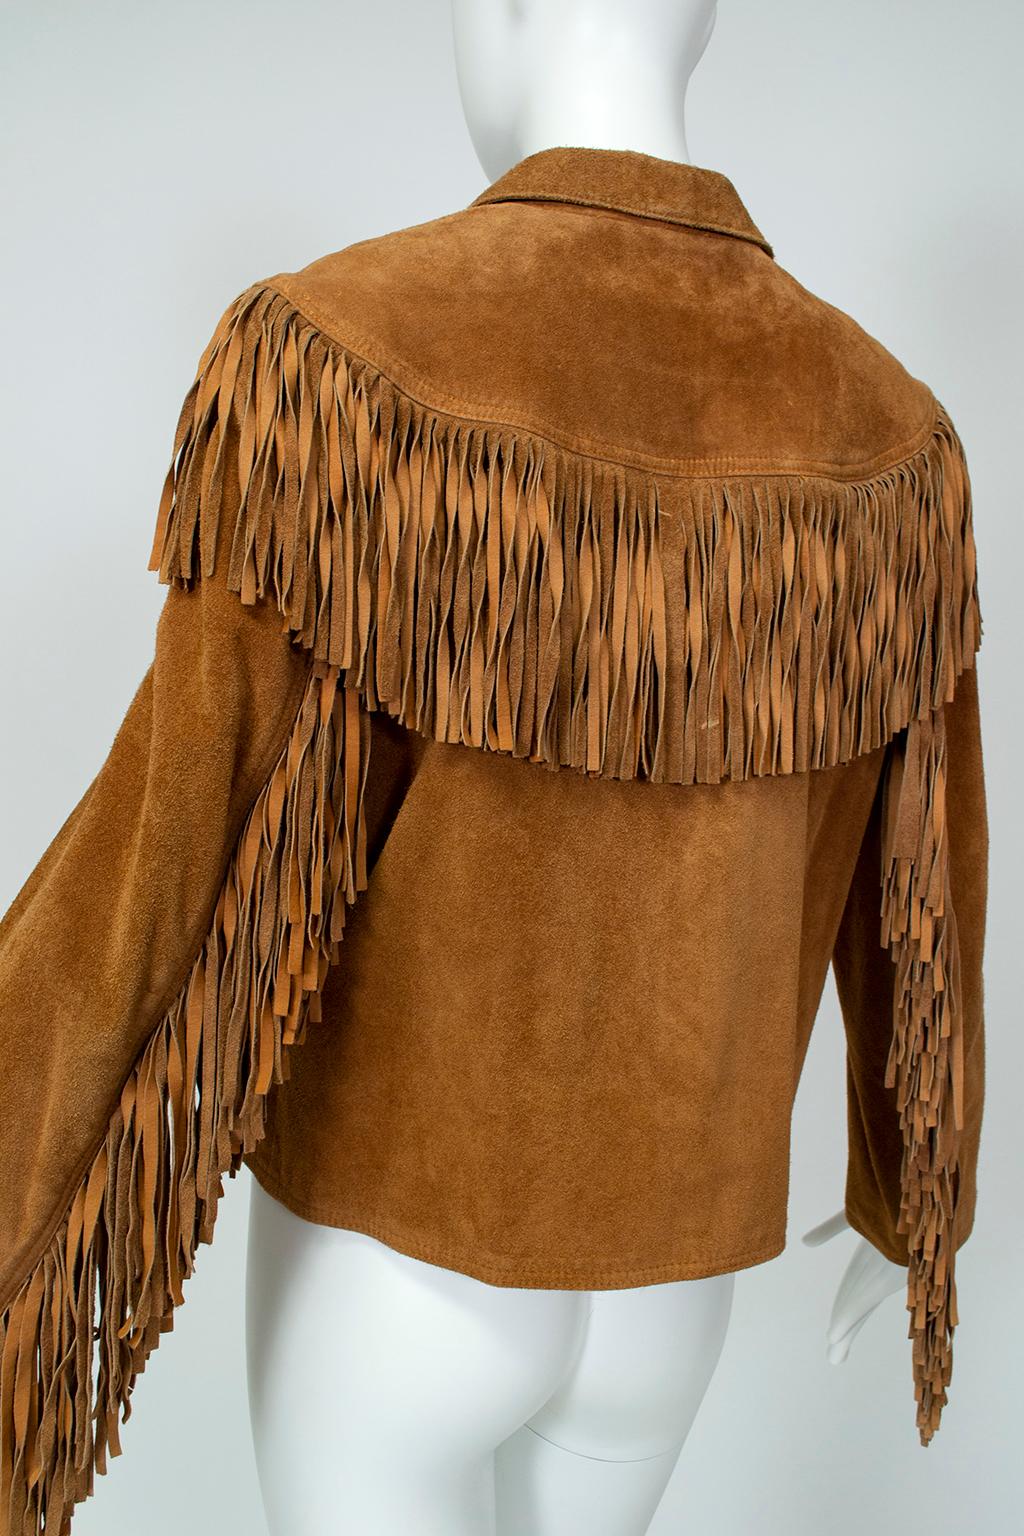 Women's Anne Klein Cinnamon Suede Fringed Western Shirt Jacket – S-M, 1970s